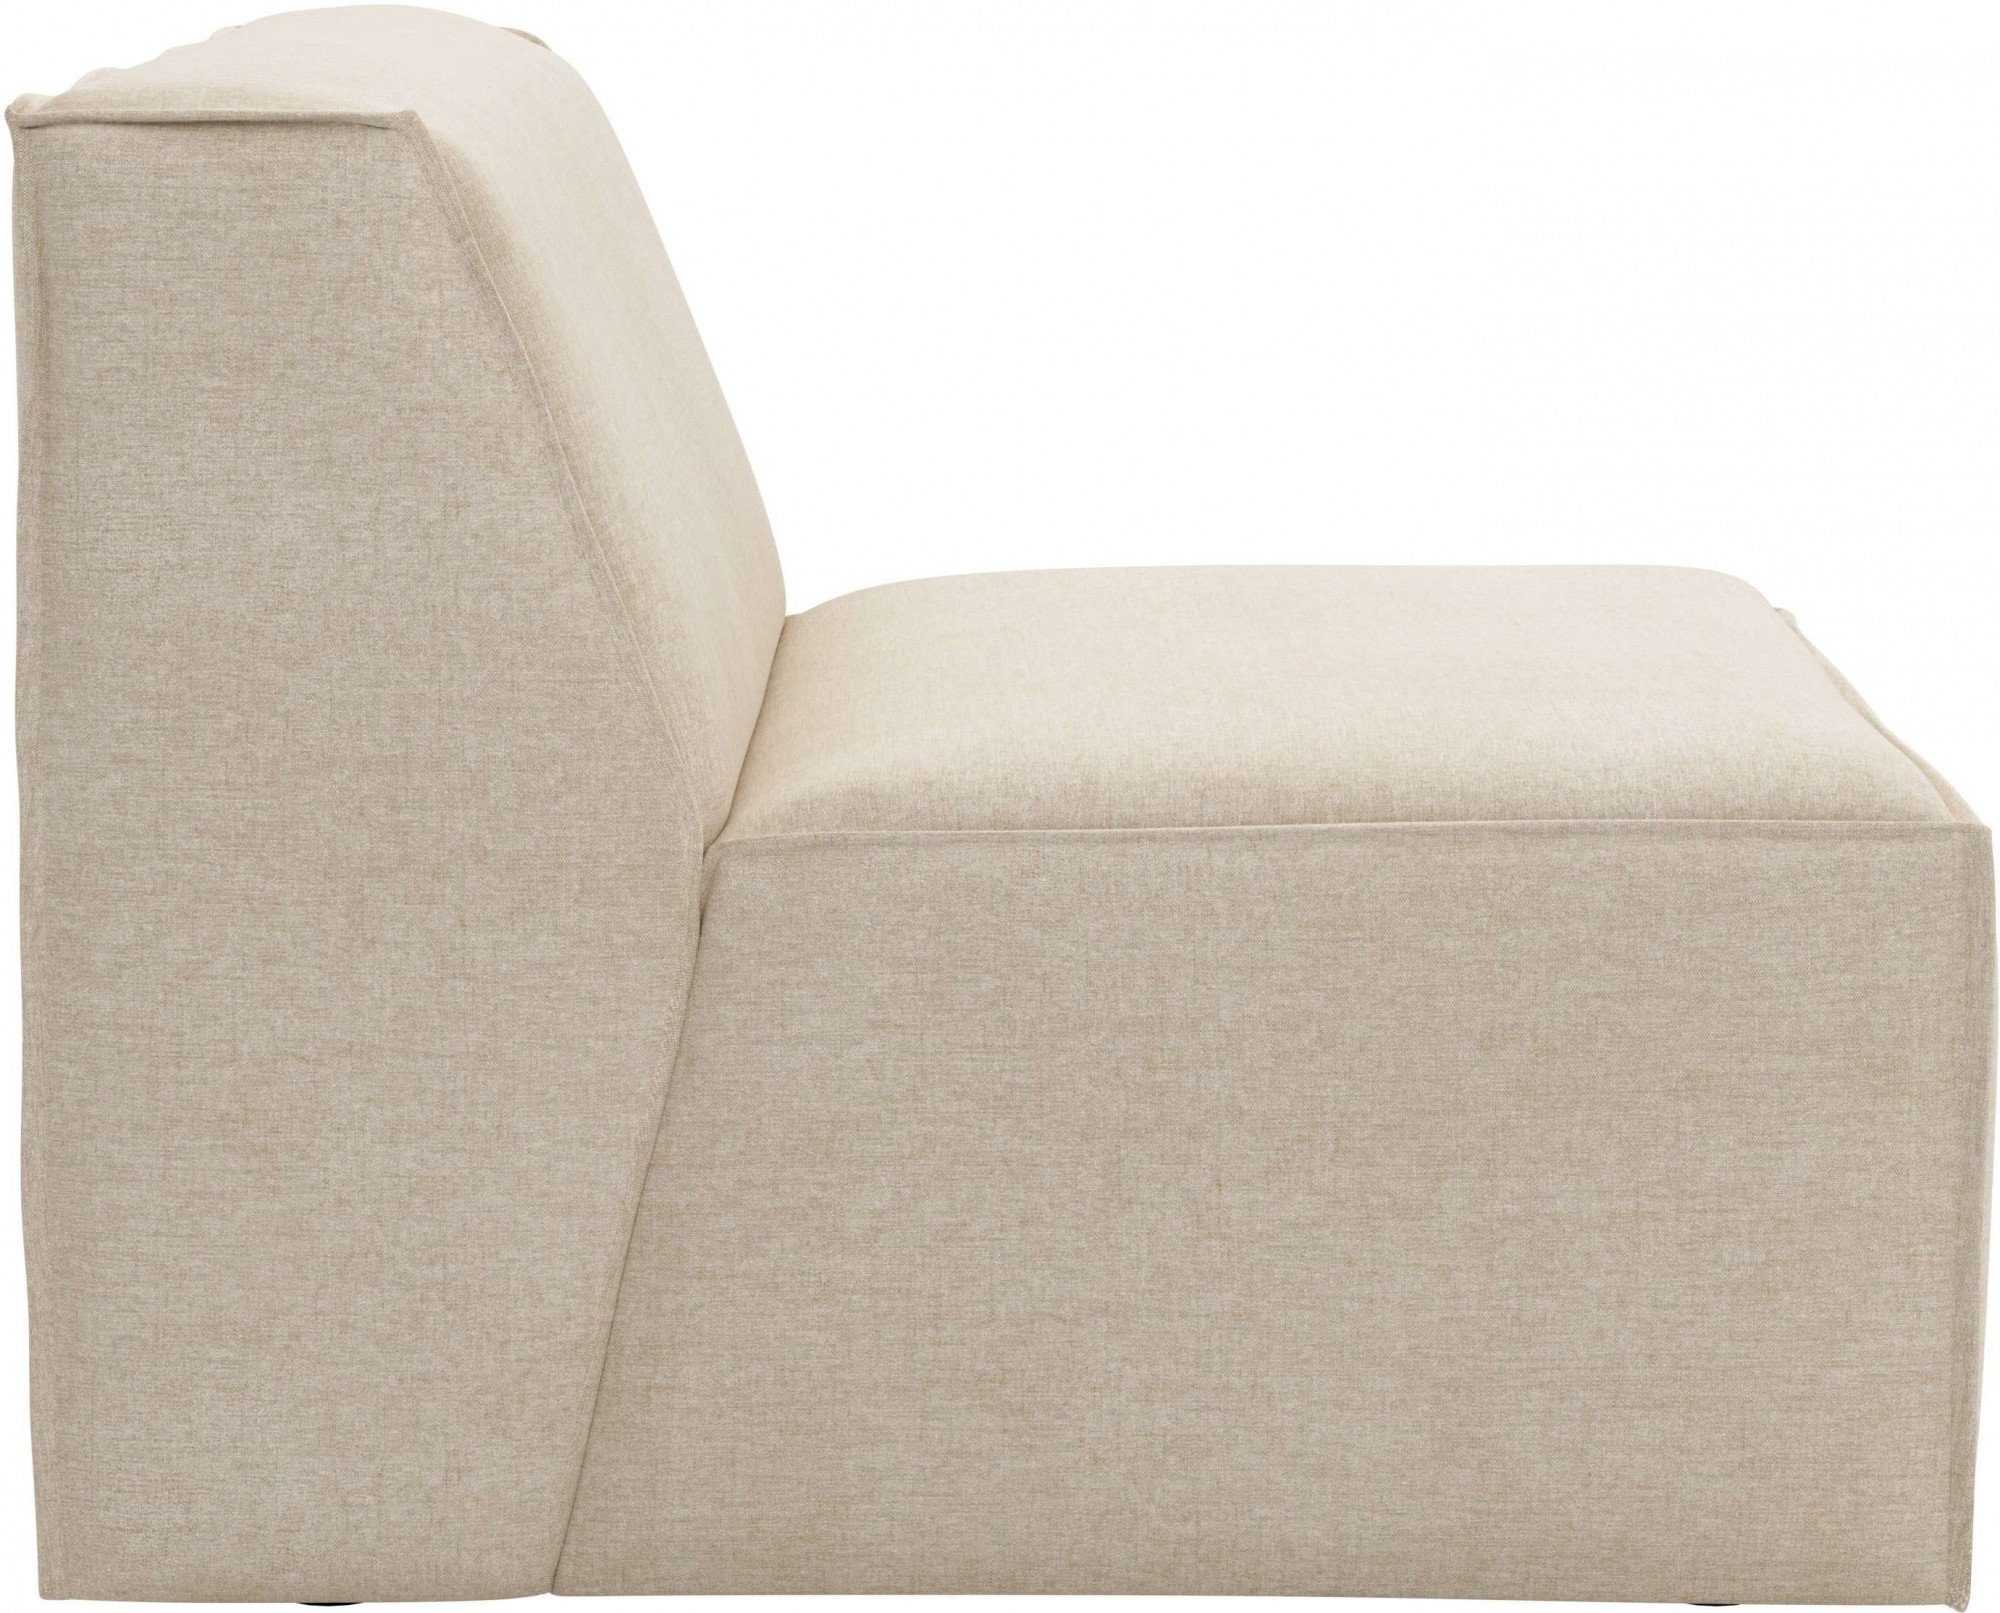 RAUM.ID Sofa-Mittelelement Norvid, modular, Modulen an große natural Taschenfederkern, mit Auswahl